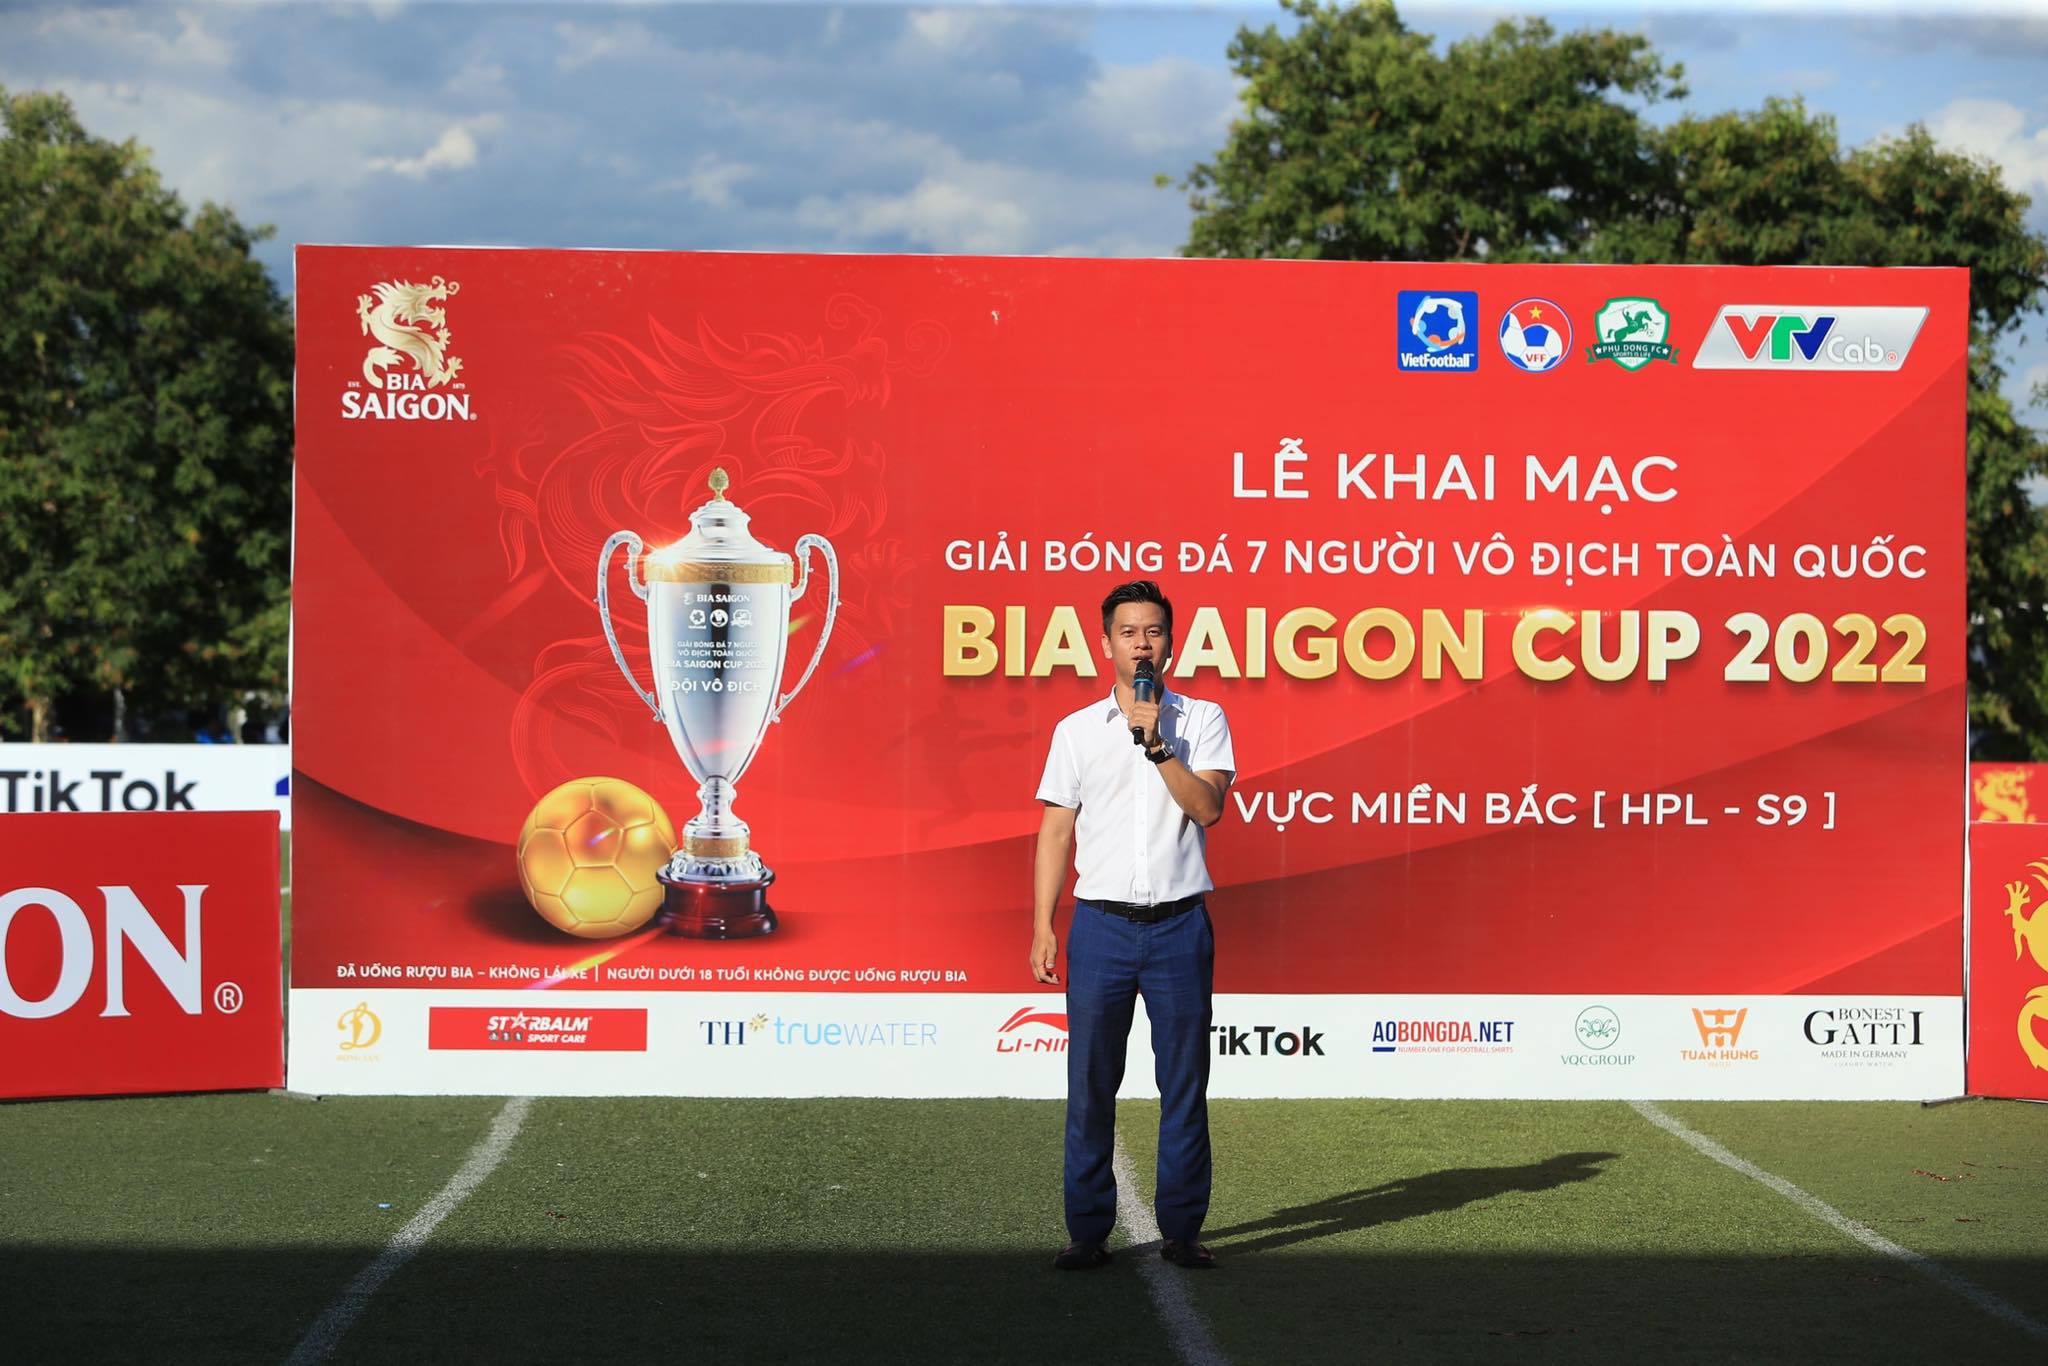 Tổng giám đốc Vietfootball tuyên bố khai mạc giải 